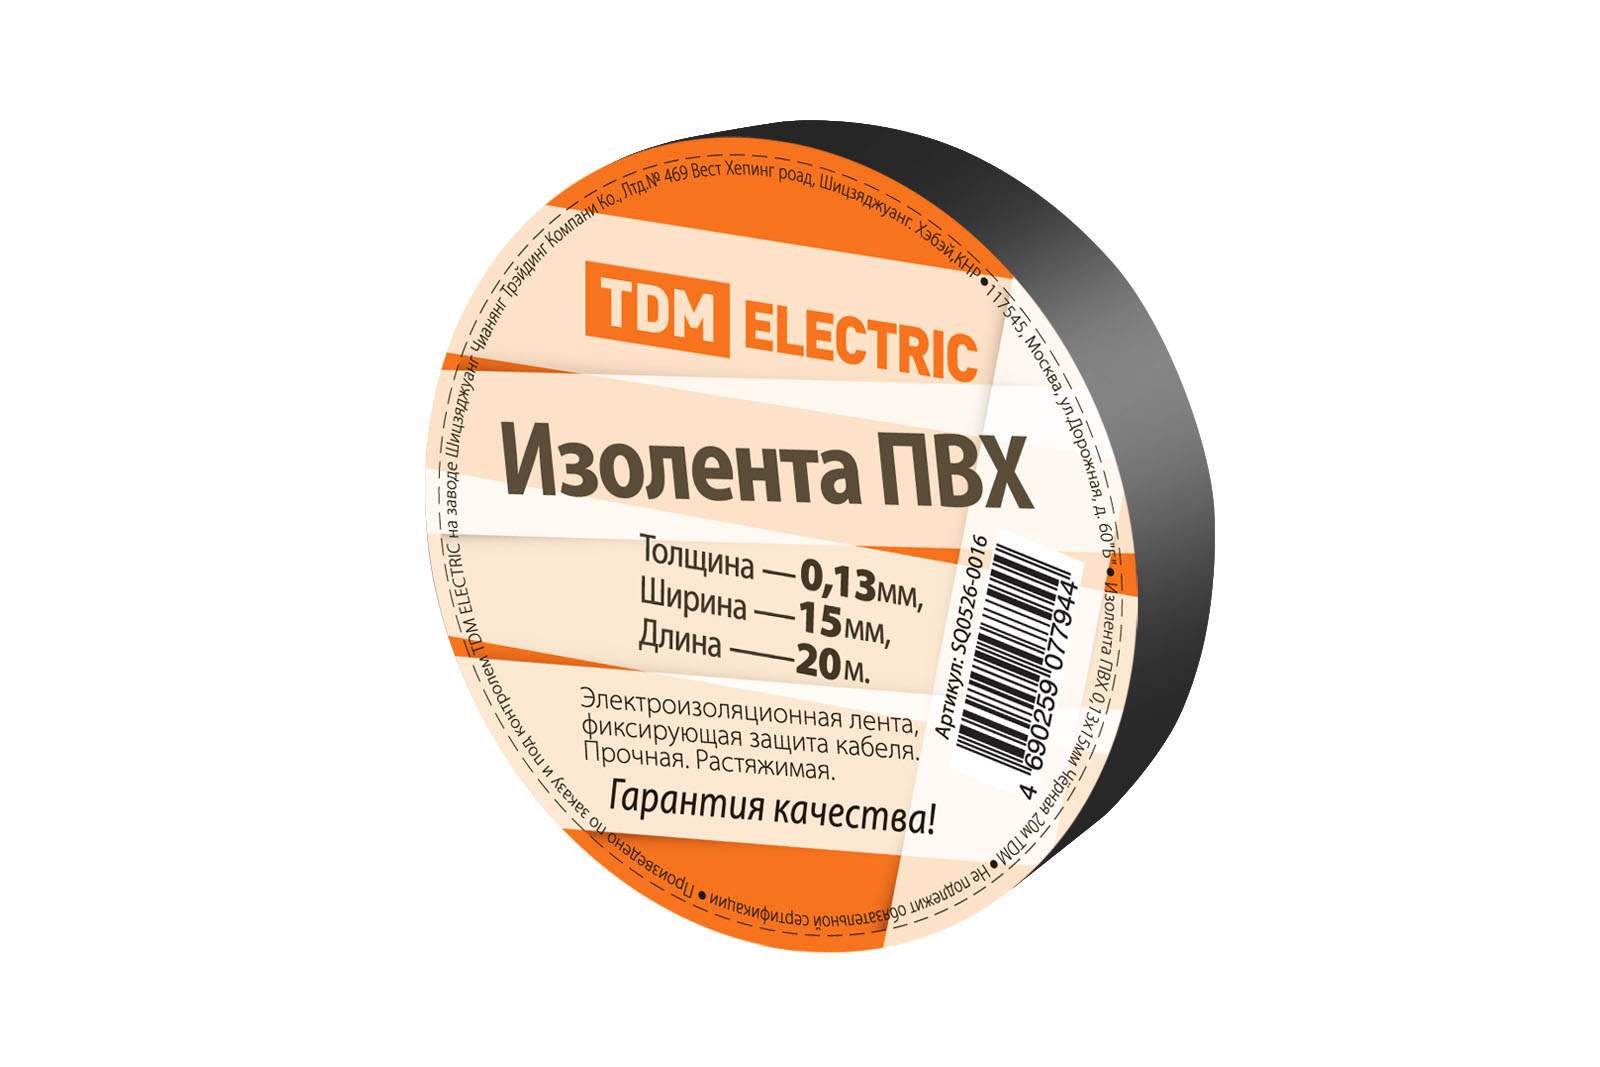 изолента пвх 0,13*15мм черная 20м tdm от BTSprom.by